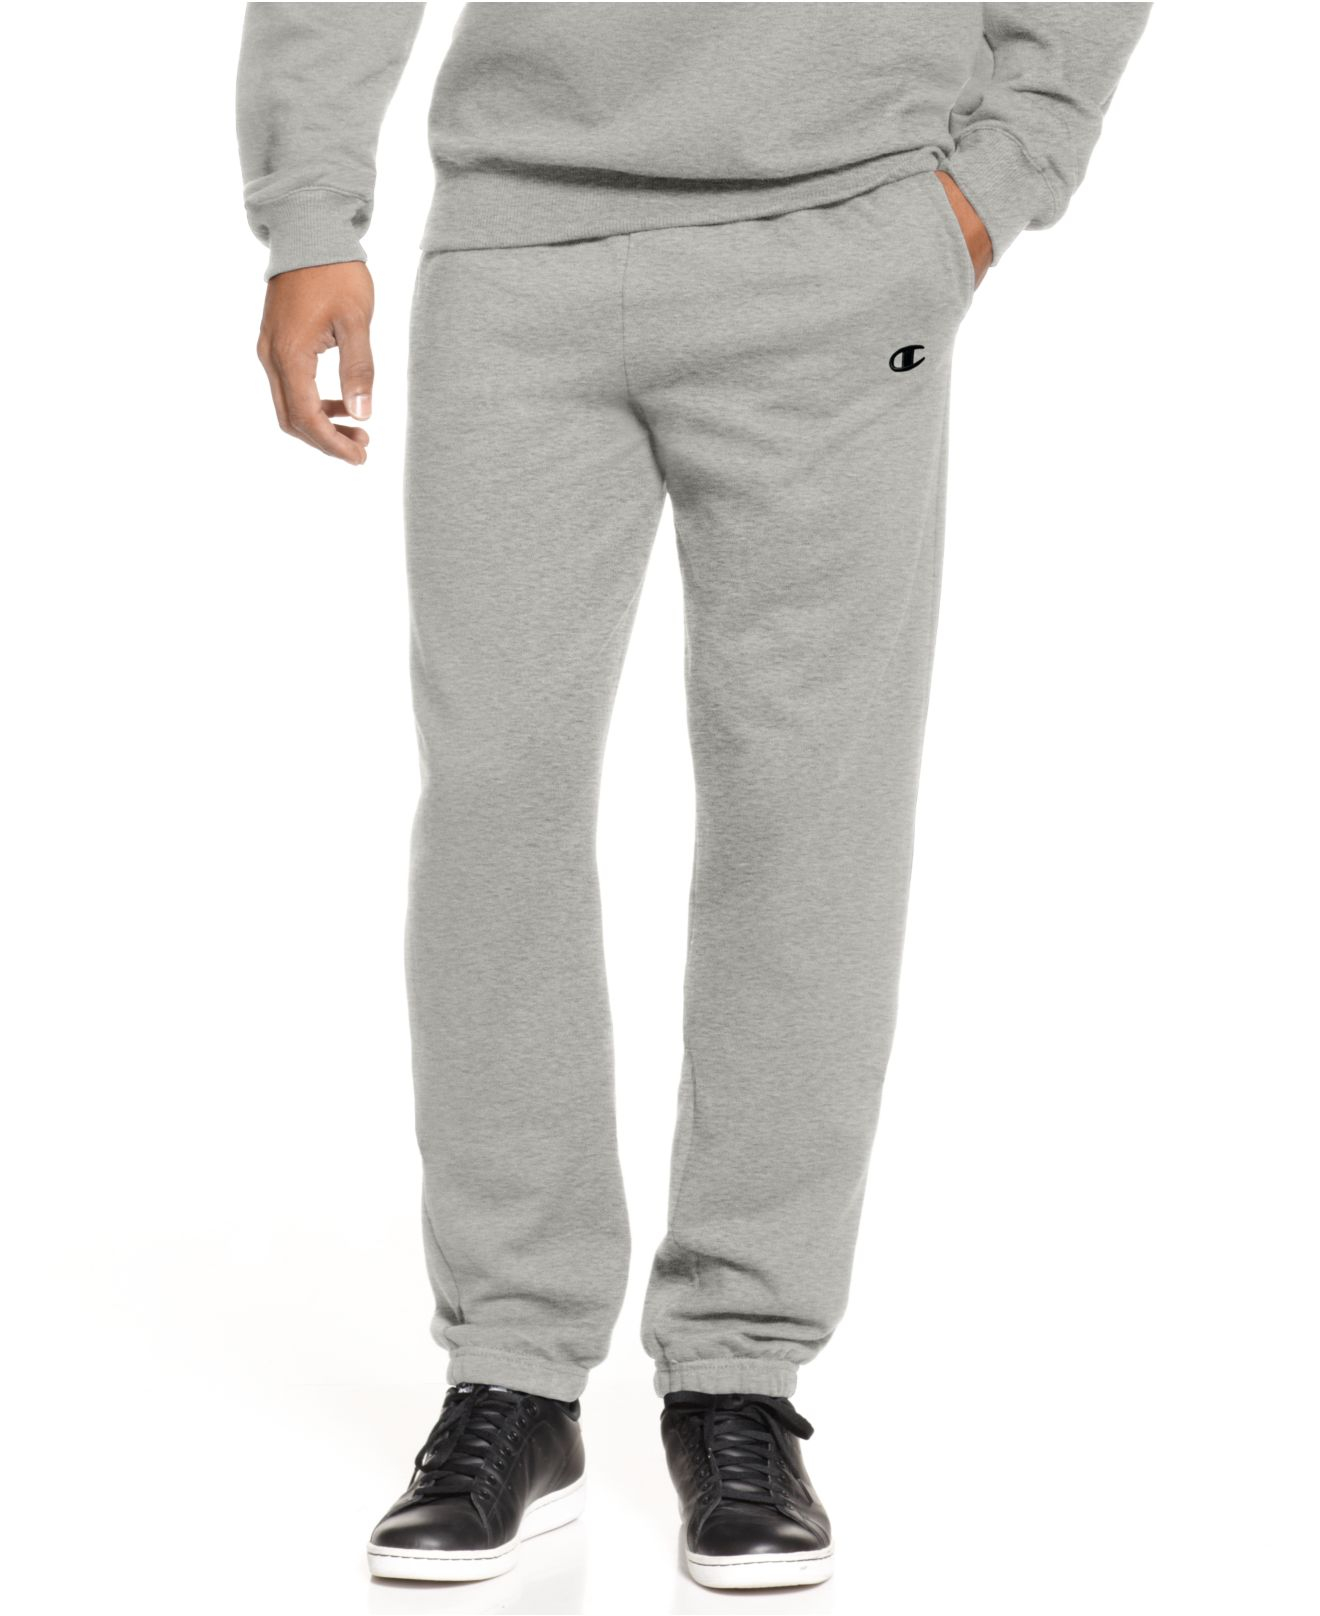 Lyst - Champion Men's Fleece Sweatpants in Gray for Men